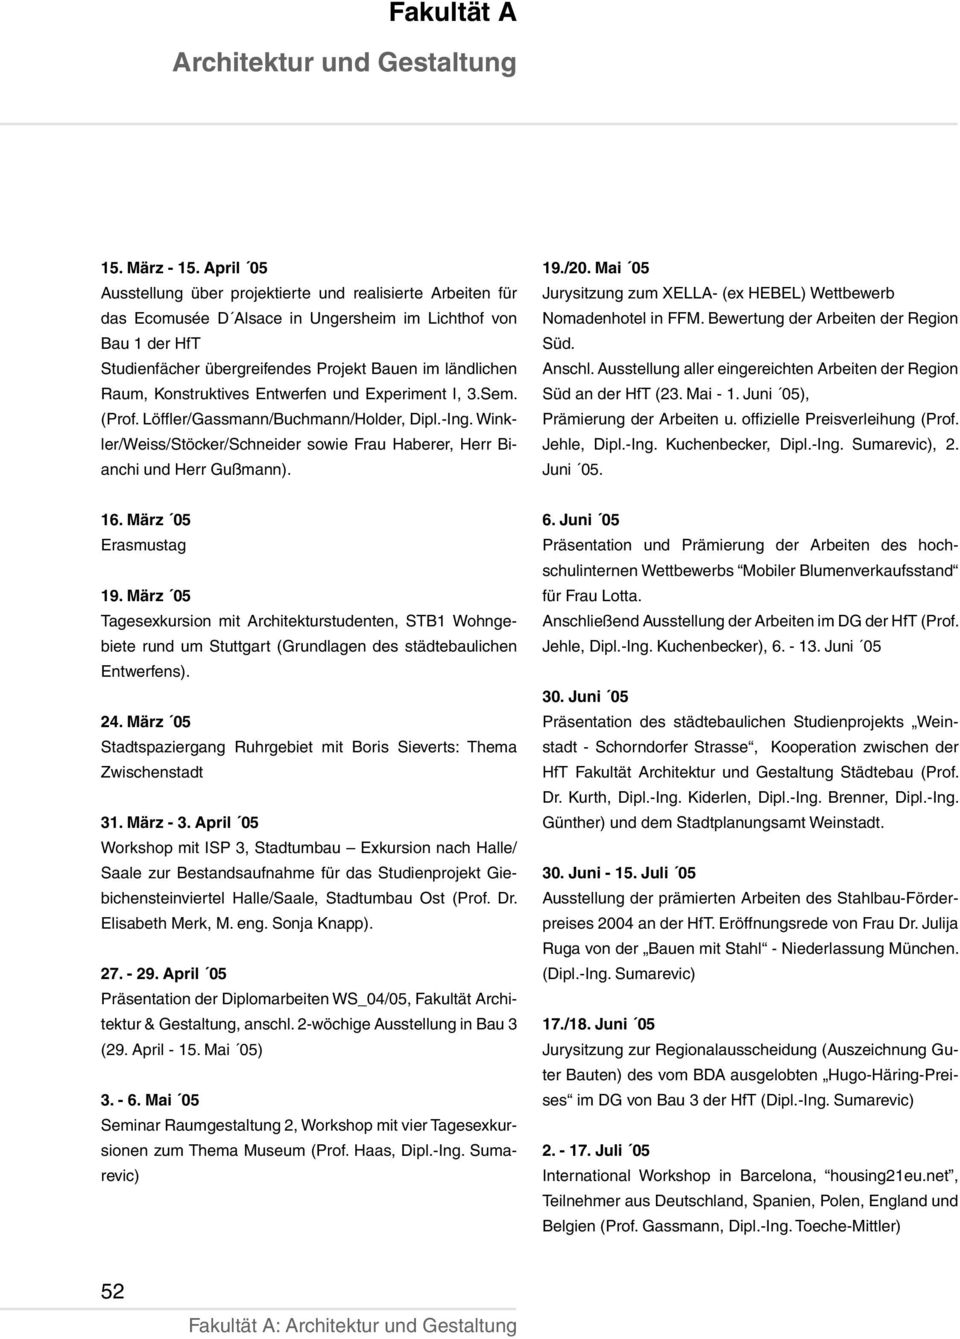 Konstruktives Entwerfen und Experiment I, 3.Sem. (Prof. Löffler/Gassmann/Buchmann/Holder, Dipl.-Ing. Winkler/Weiss/Stöcker/Schneider sowie Frau Haberer, Herr Bianchi und Herr Gußmann). 19./20.